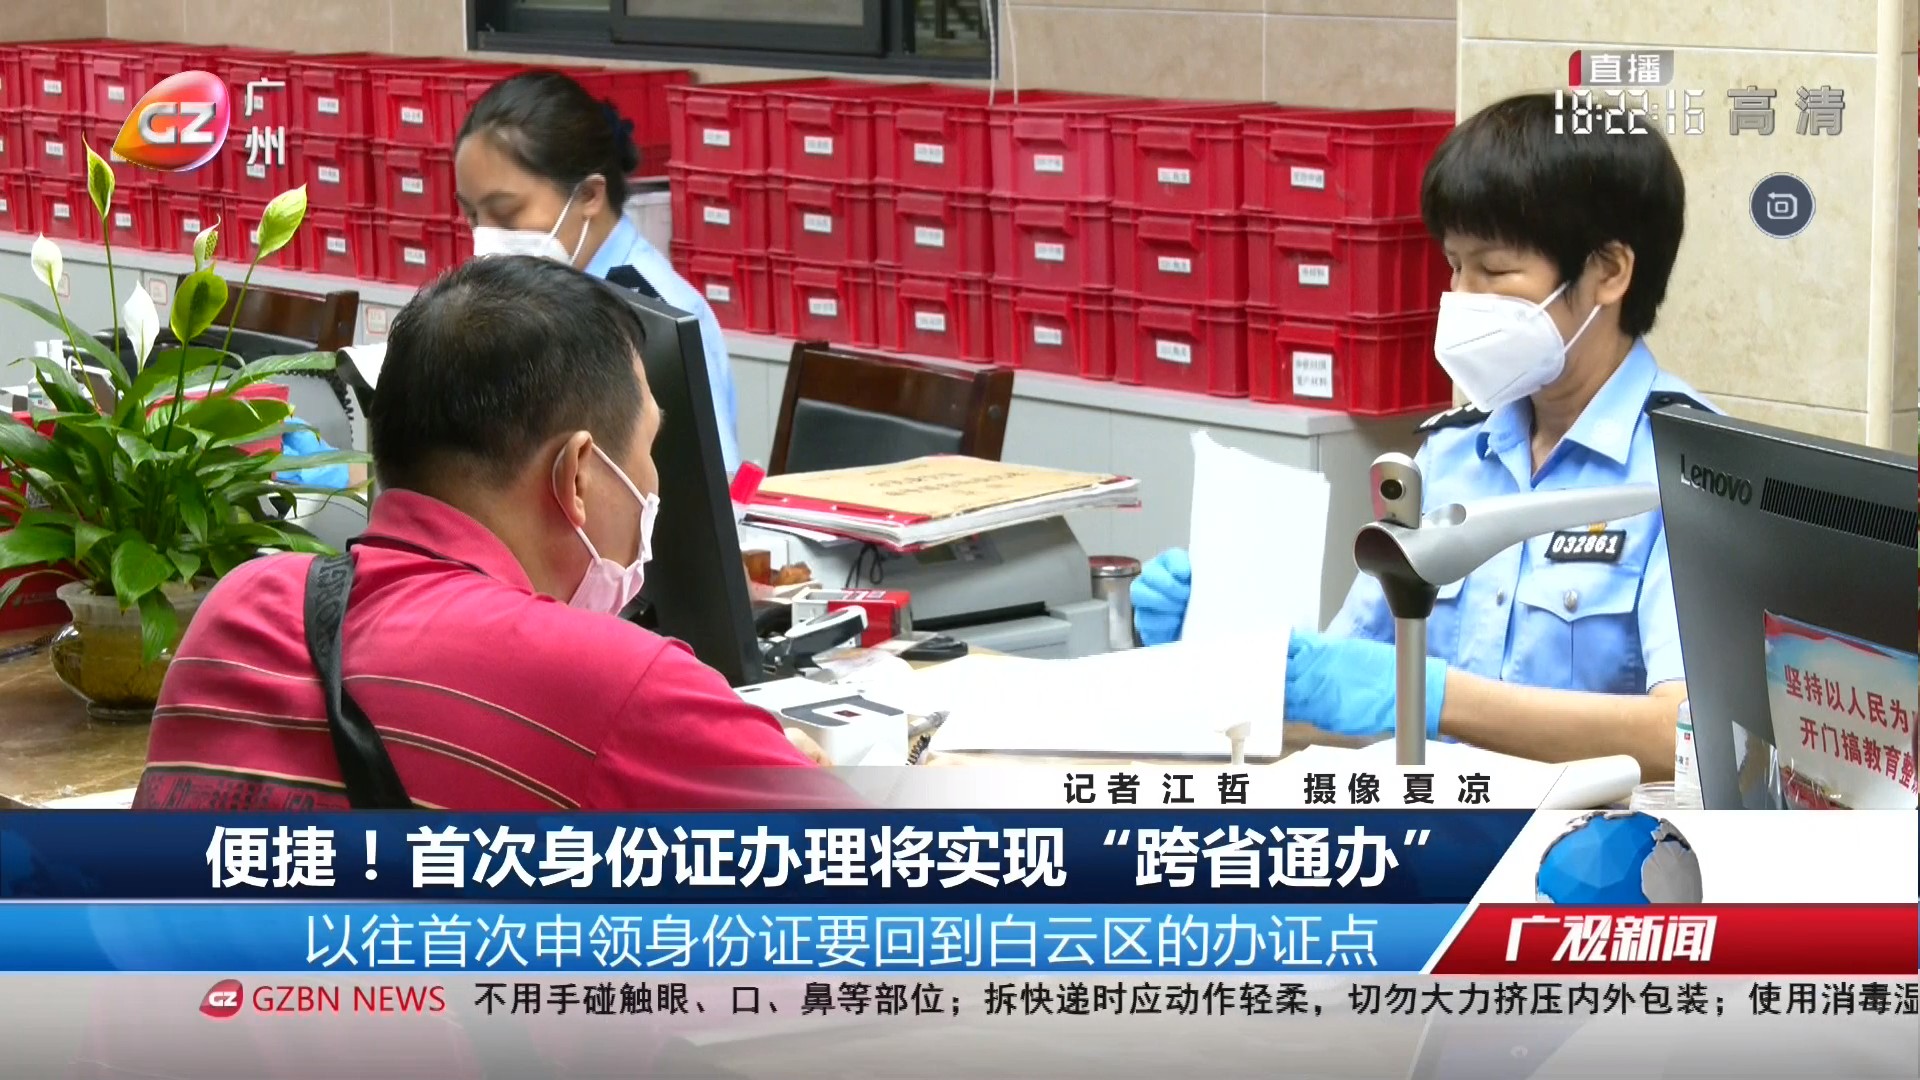 广州台综合频道 广视新闻 便捷！首次身份证办理将实现“跨省通办”